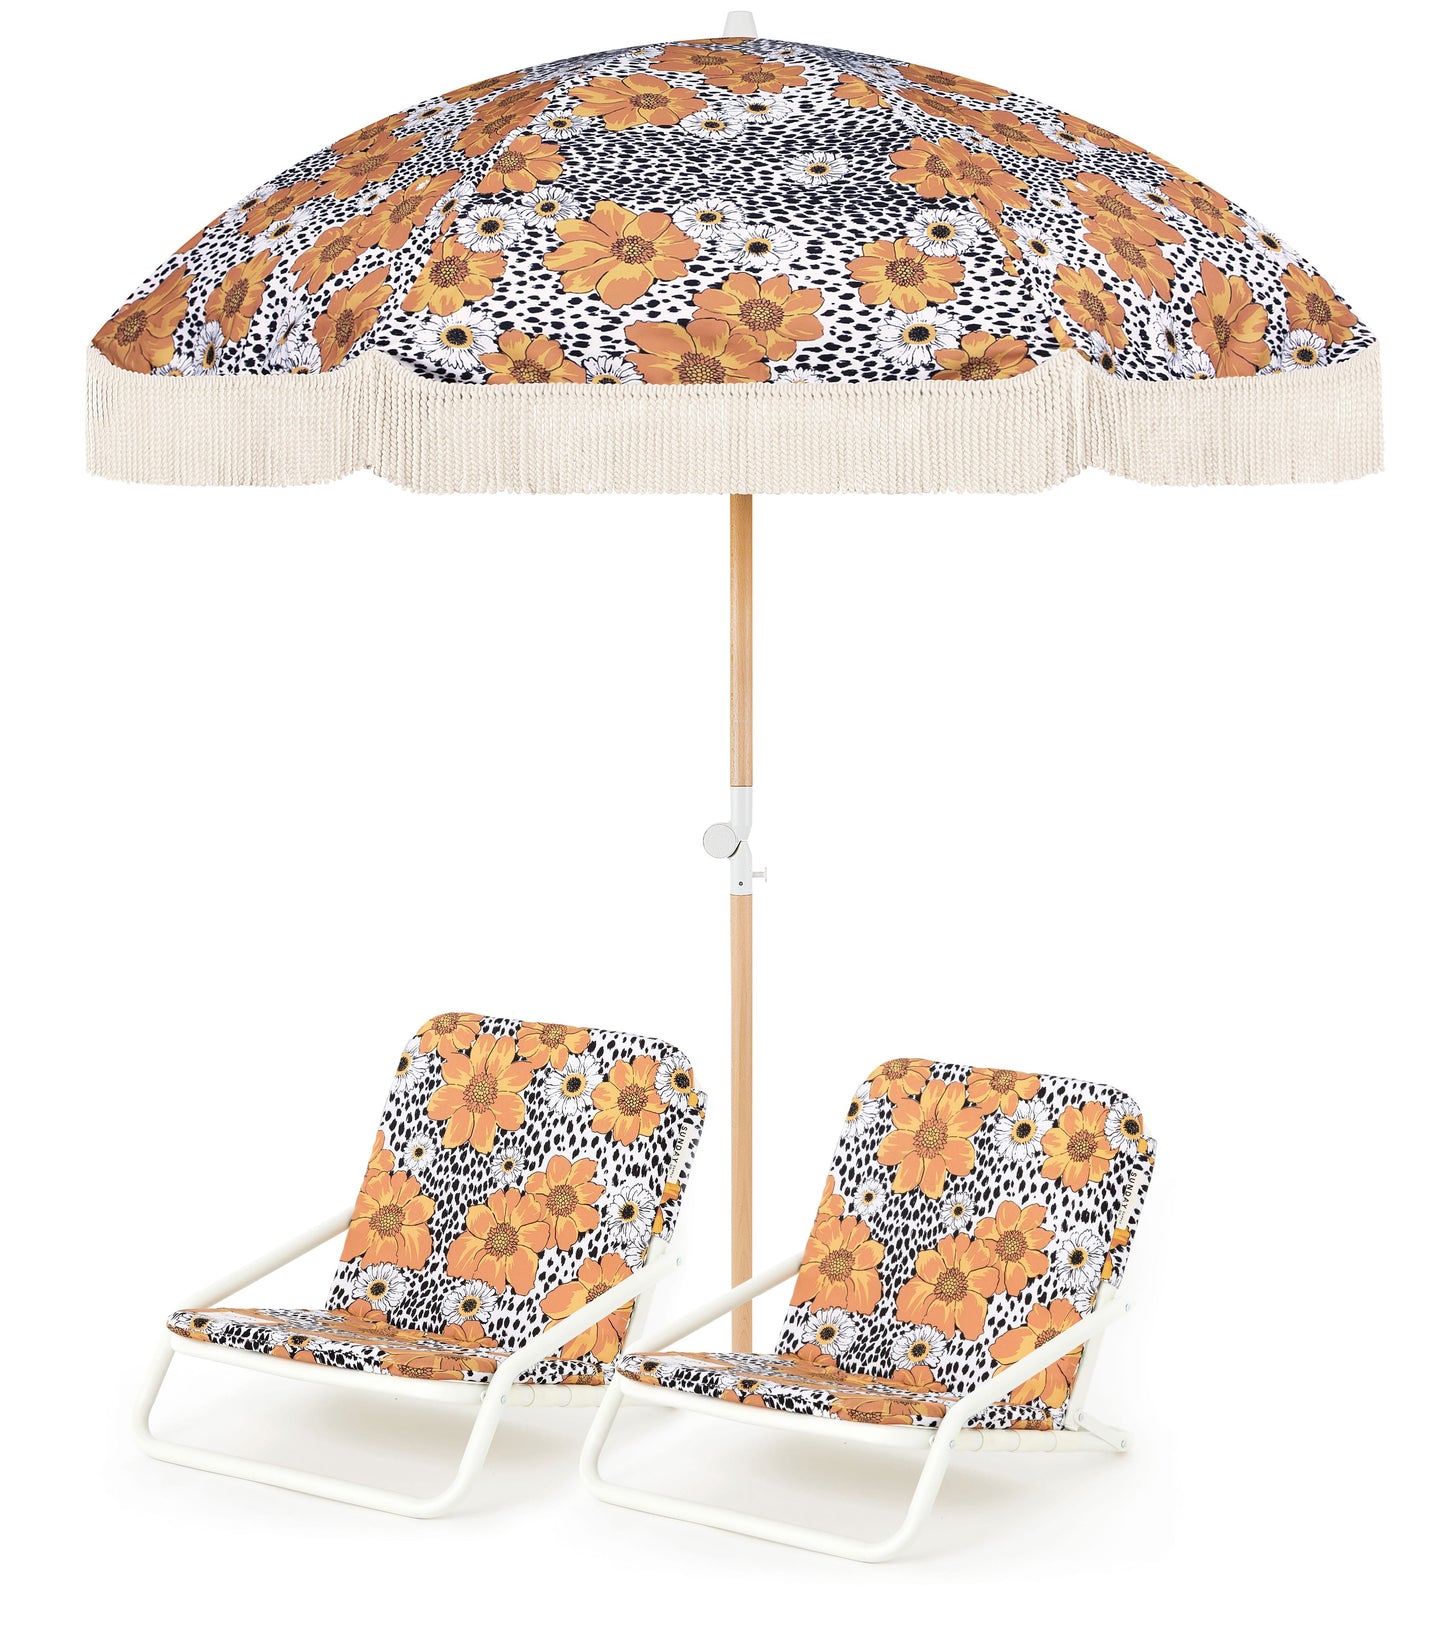 Animal Kingdom Beach Umbrella & Beach Chair Set